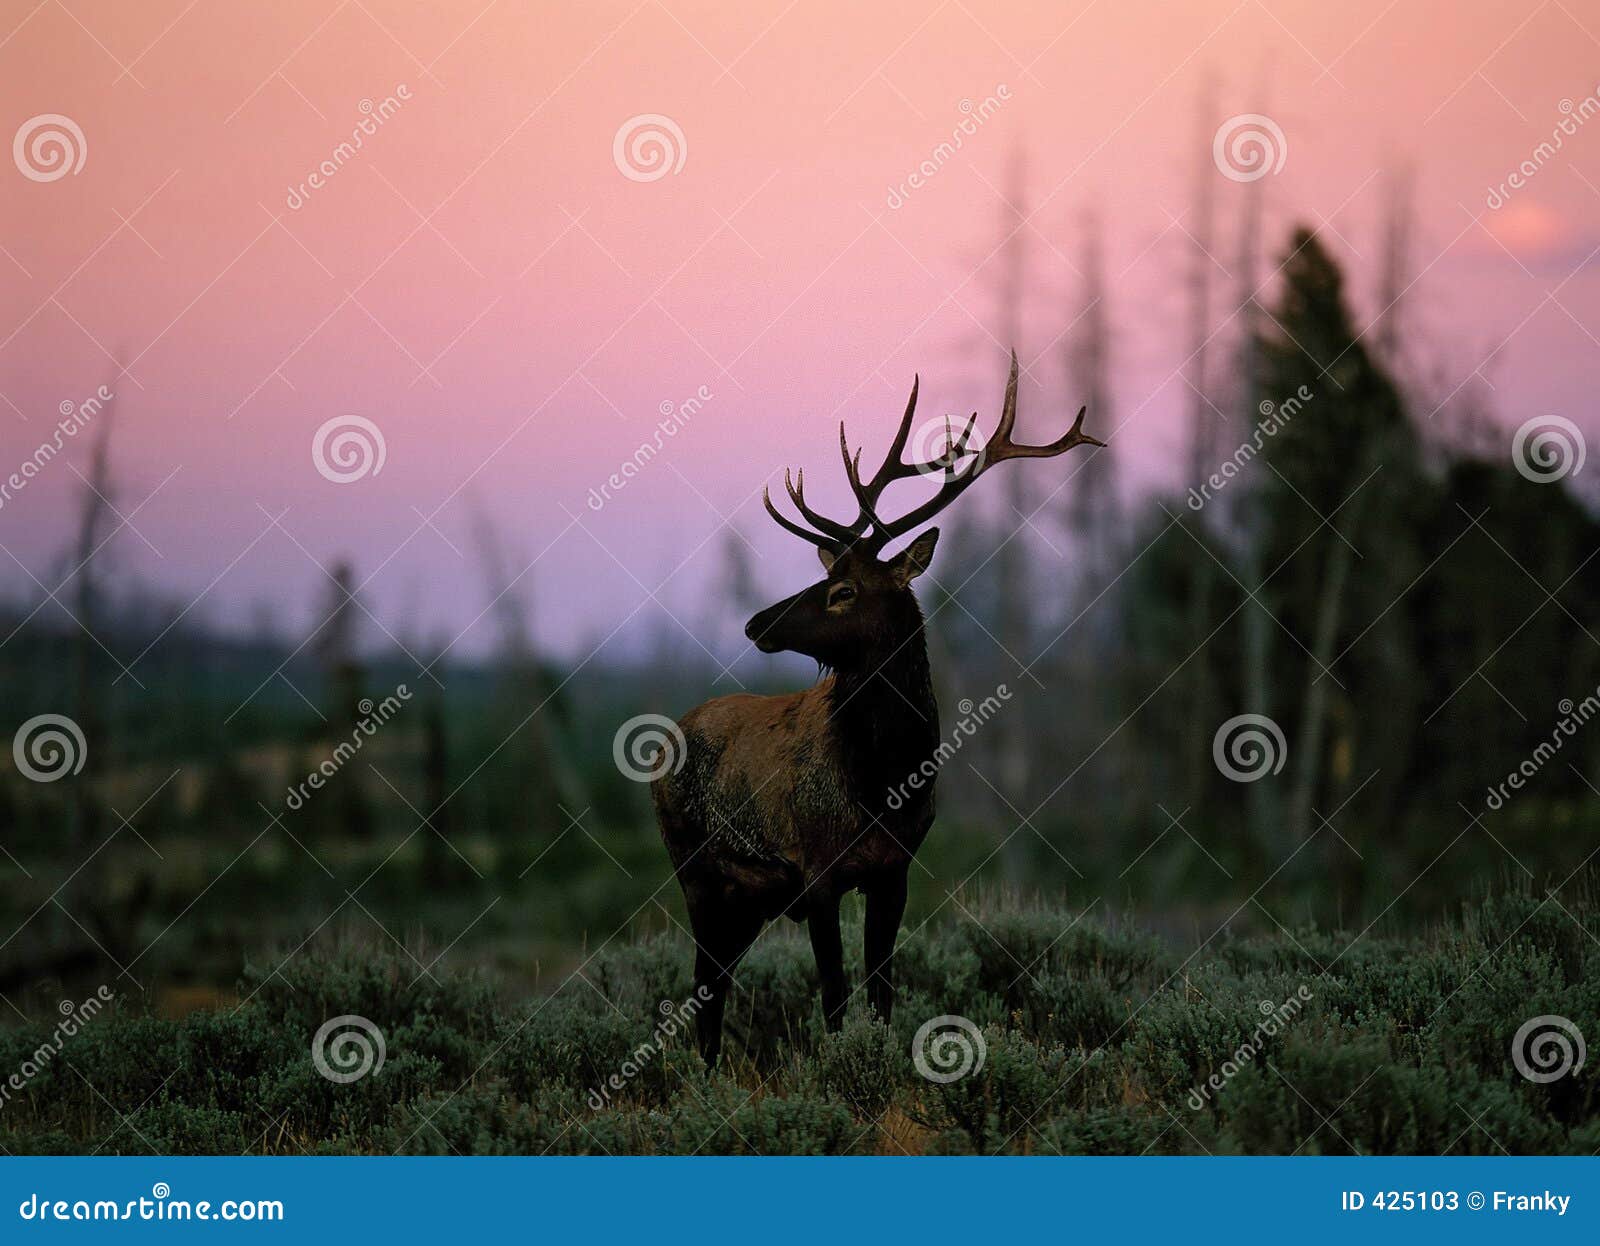 elk (cervus canadensis), wyoming